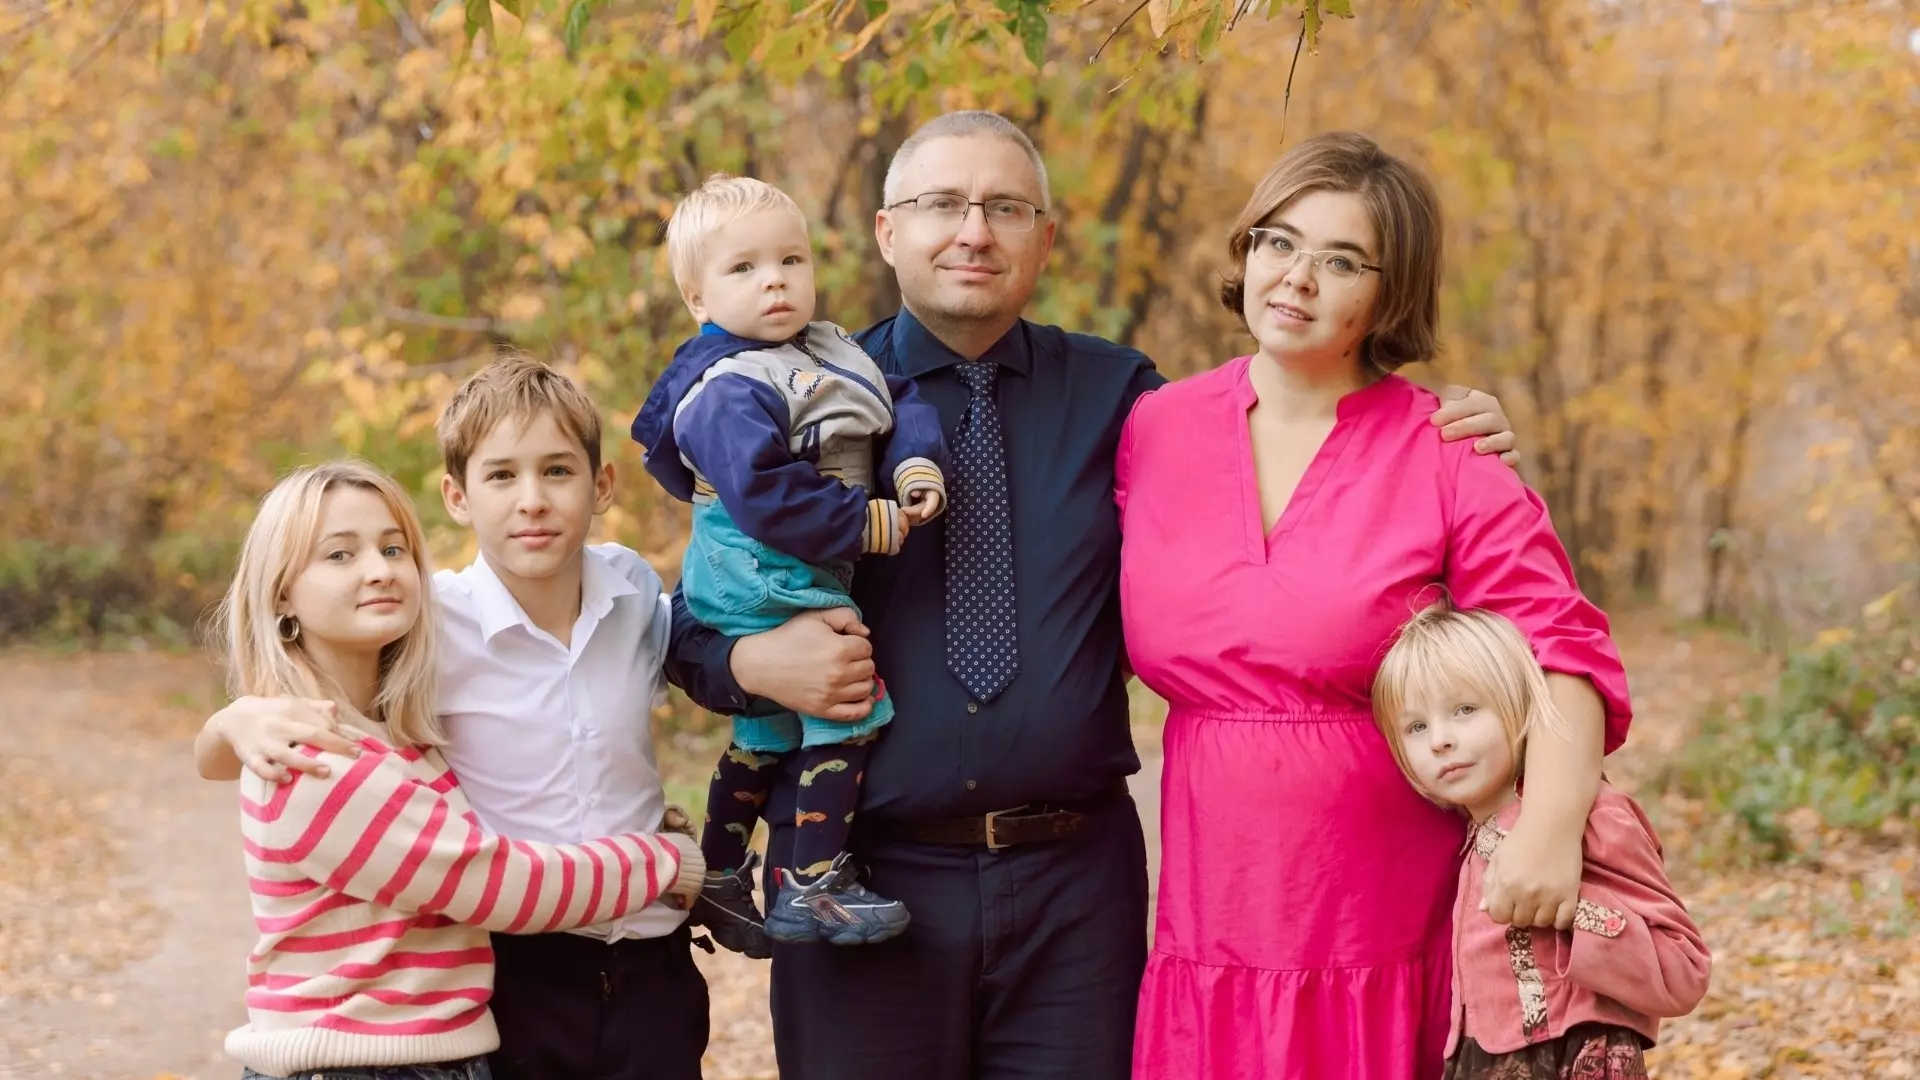 Мария Мухачева - сама многодетная мама, и знает, насколько важны пособия для поддержки семьи